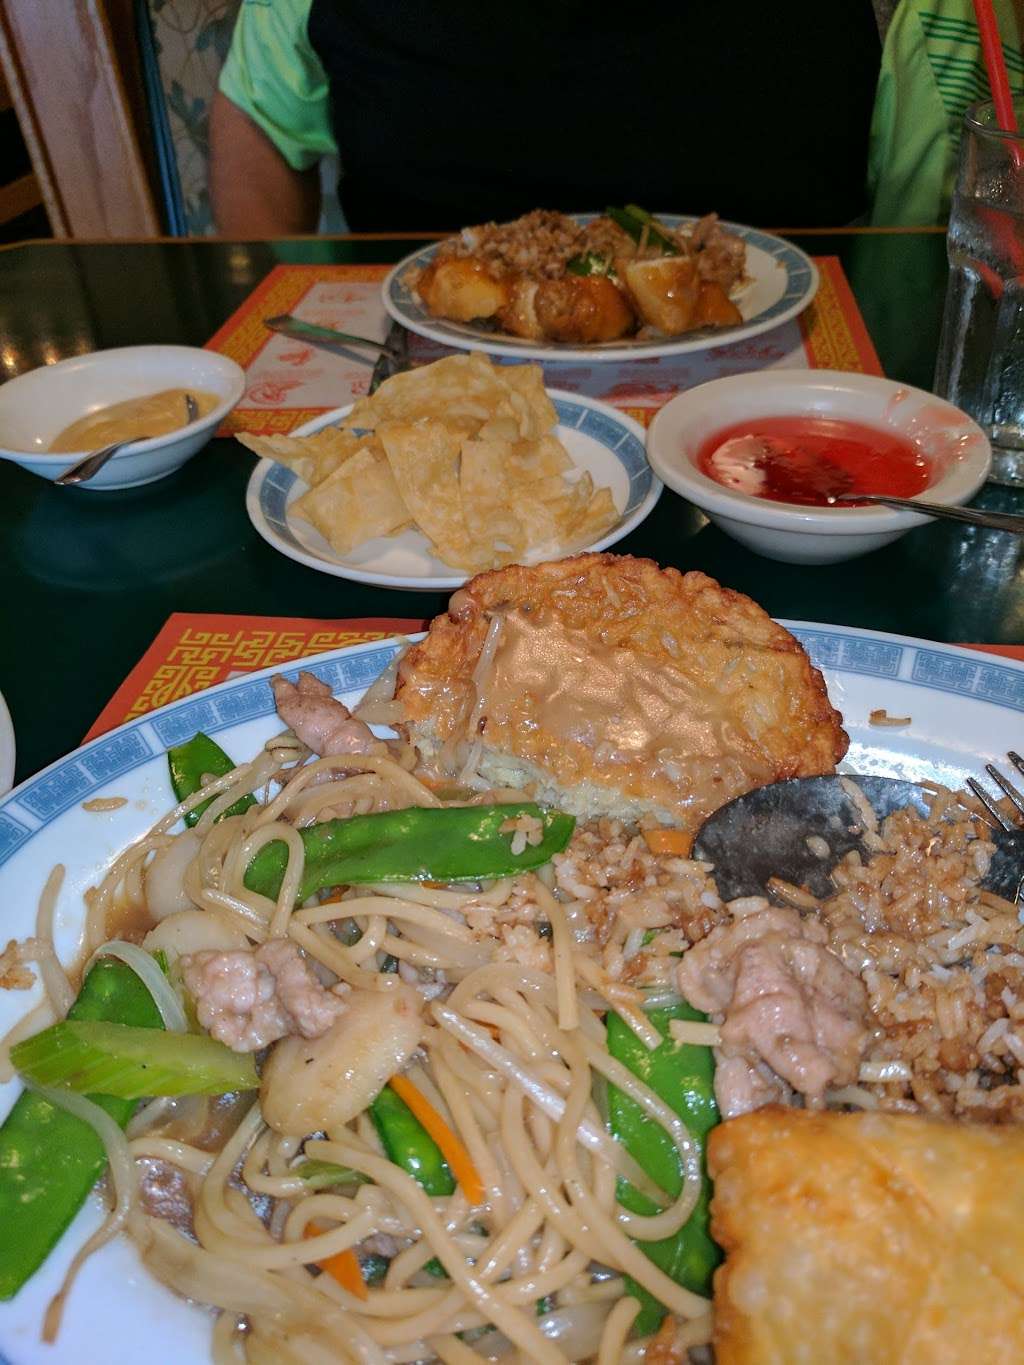 Golden Wok Chinese Restaurant | 4651 E Cactus Rd, Phoenix, AZ 85032, USA | Phone: (602) 953-9390